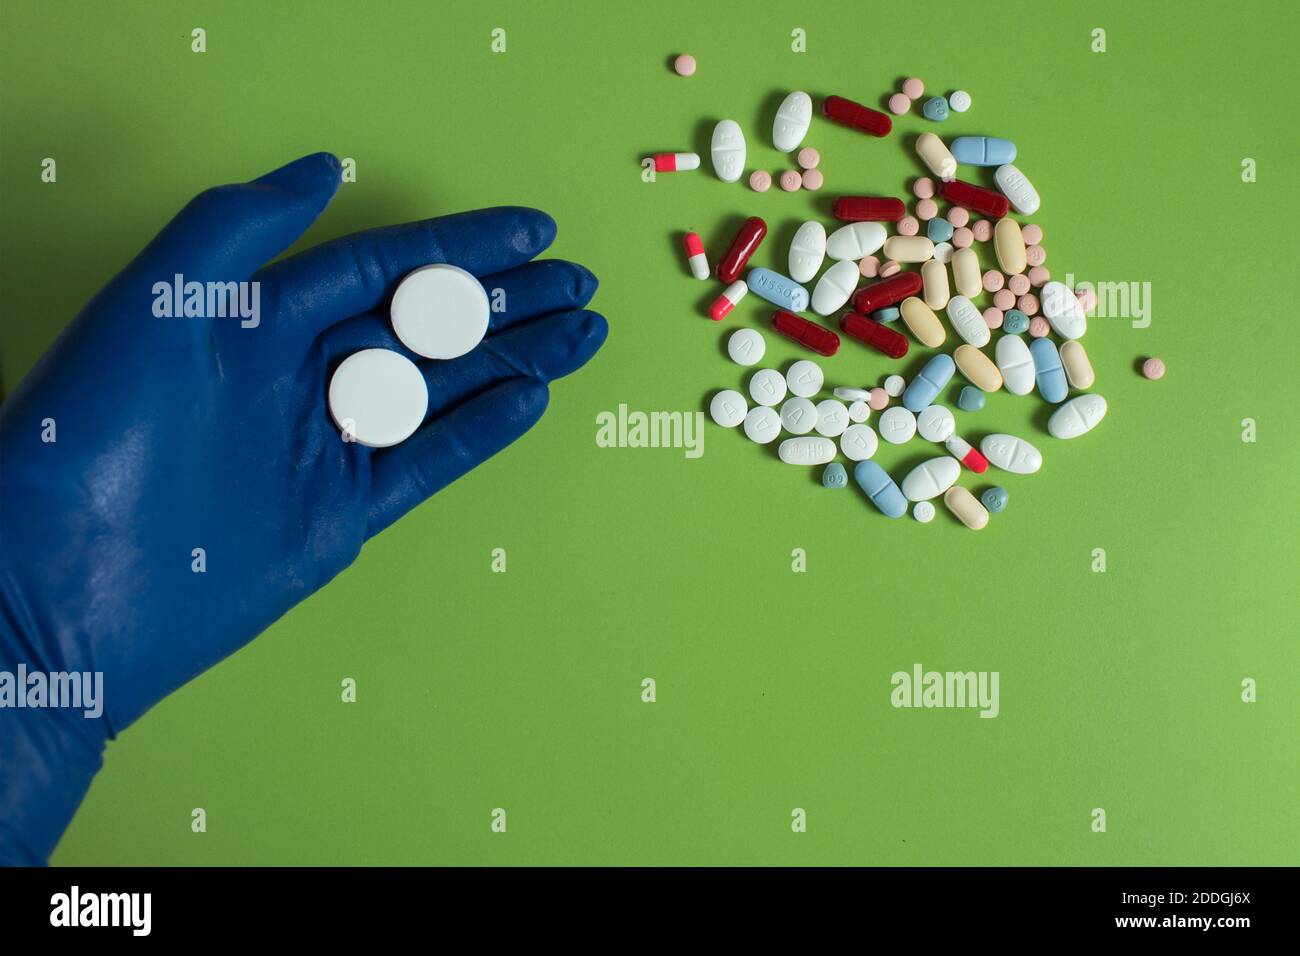 Ein blauer Handschuh enthält zwei große runde Pillen in der Nähe einiger Medikamente auf einem grünen Tisch. Persönliche Schutzausrüstung. Stockfoto